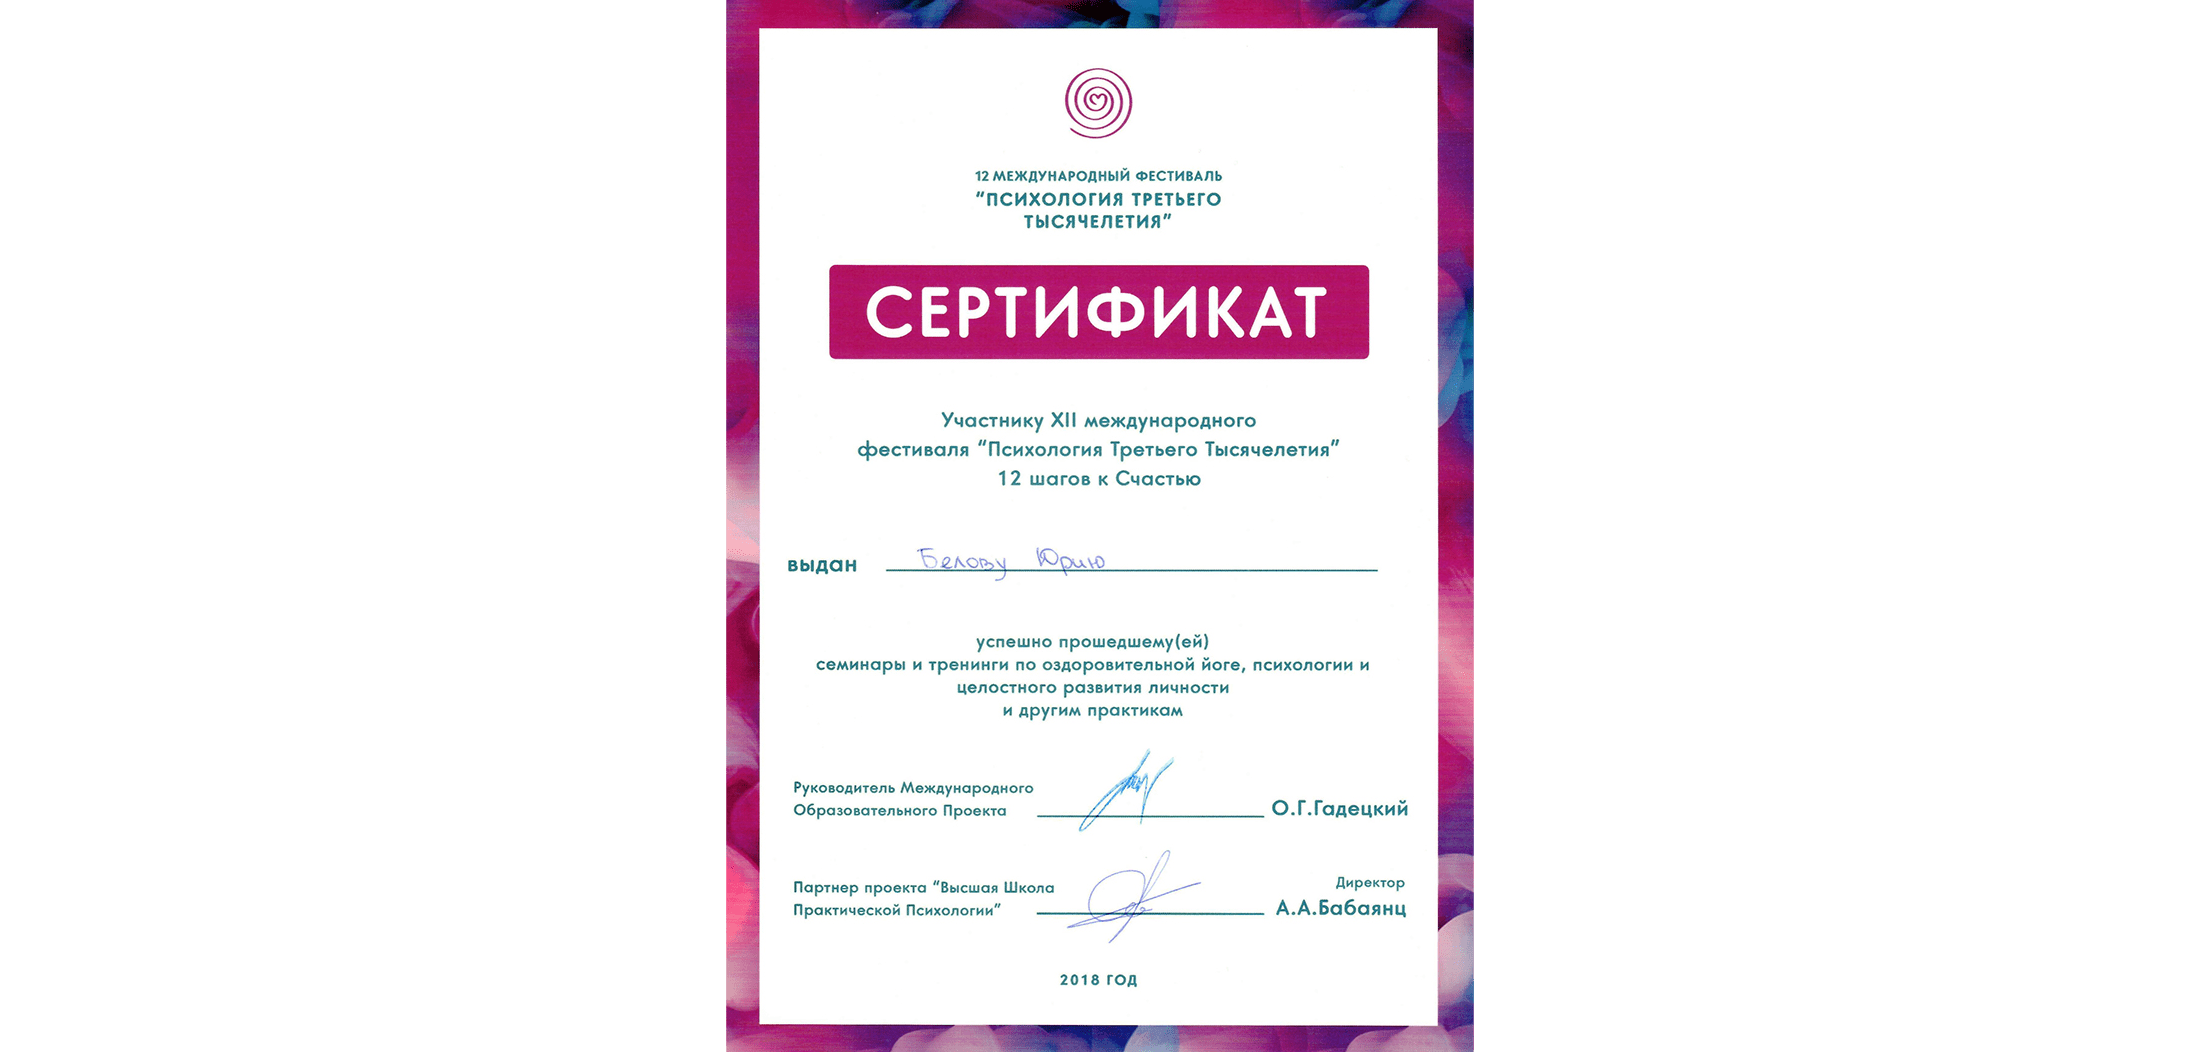 Сертификат об участии в психологической конференции 